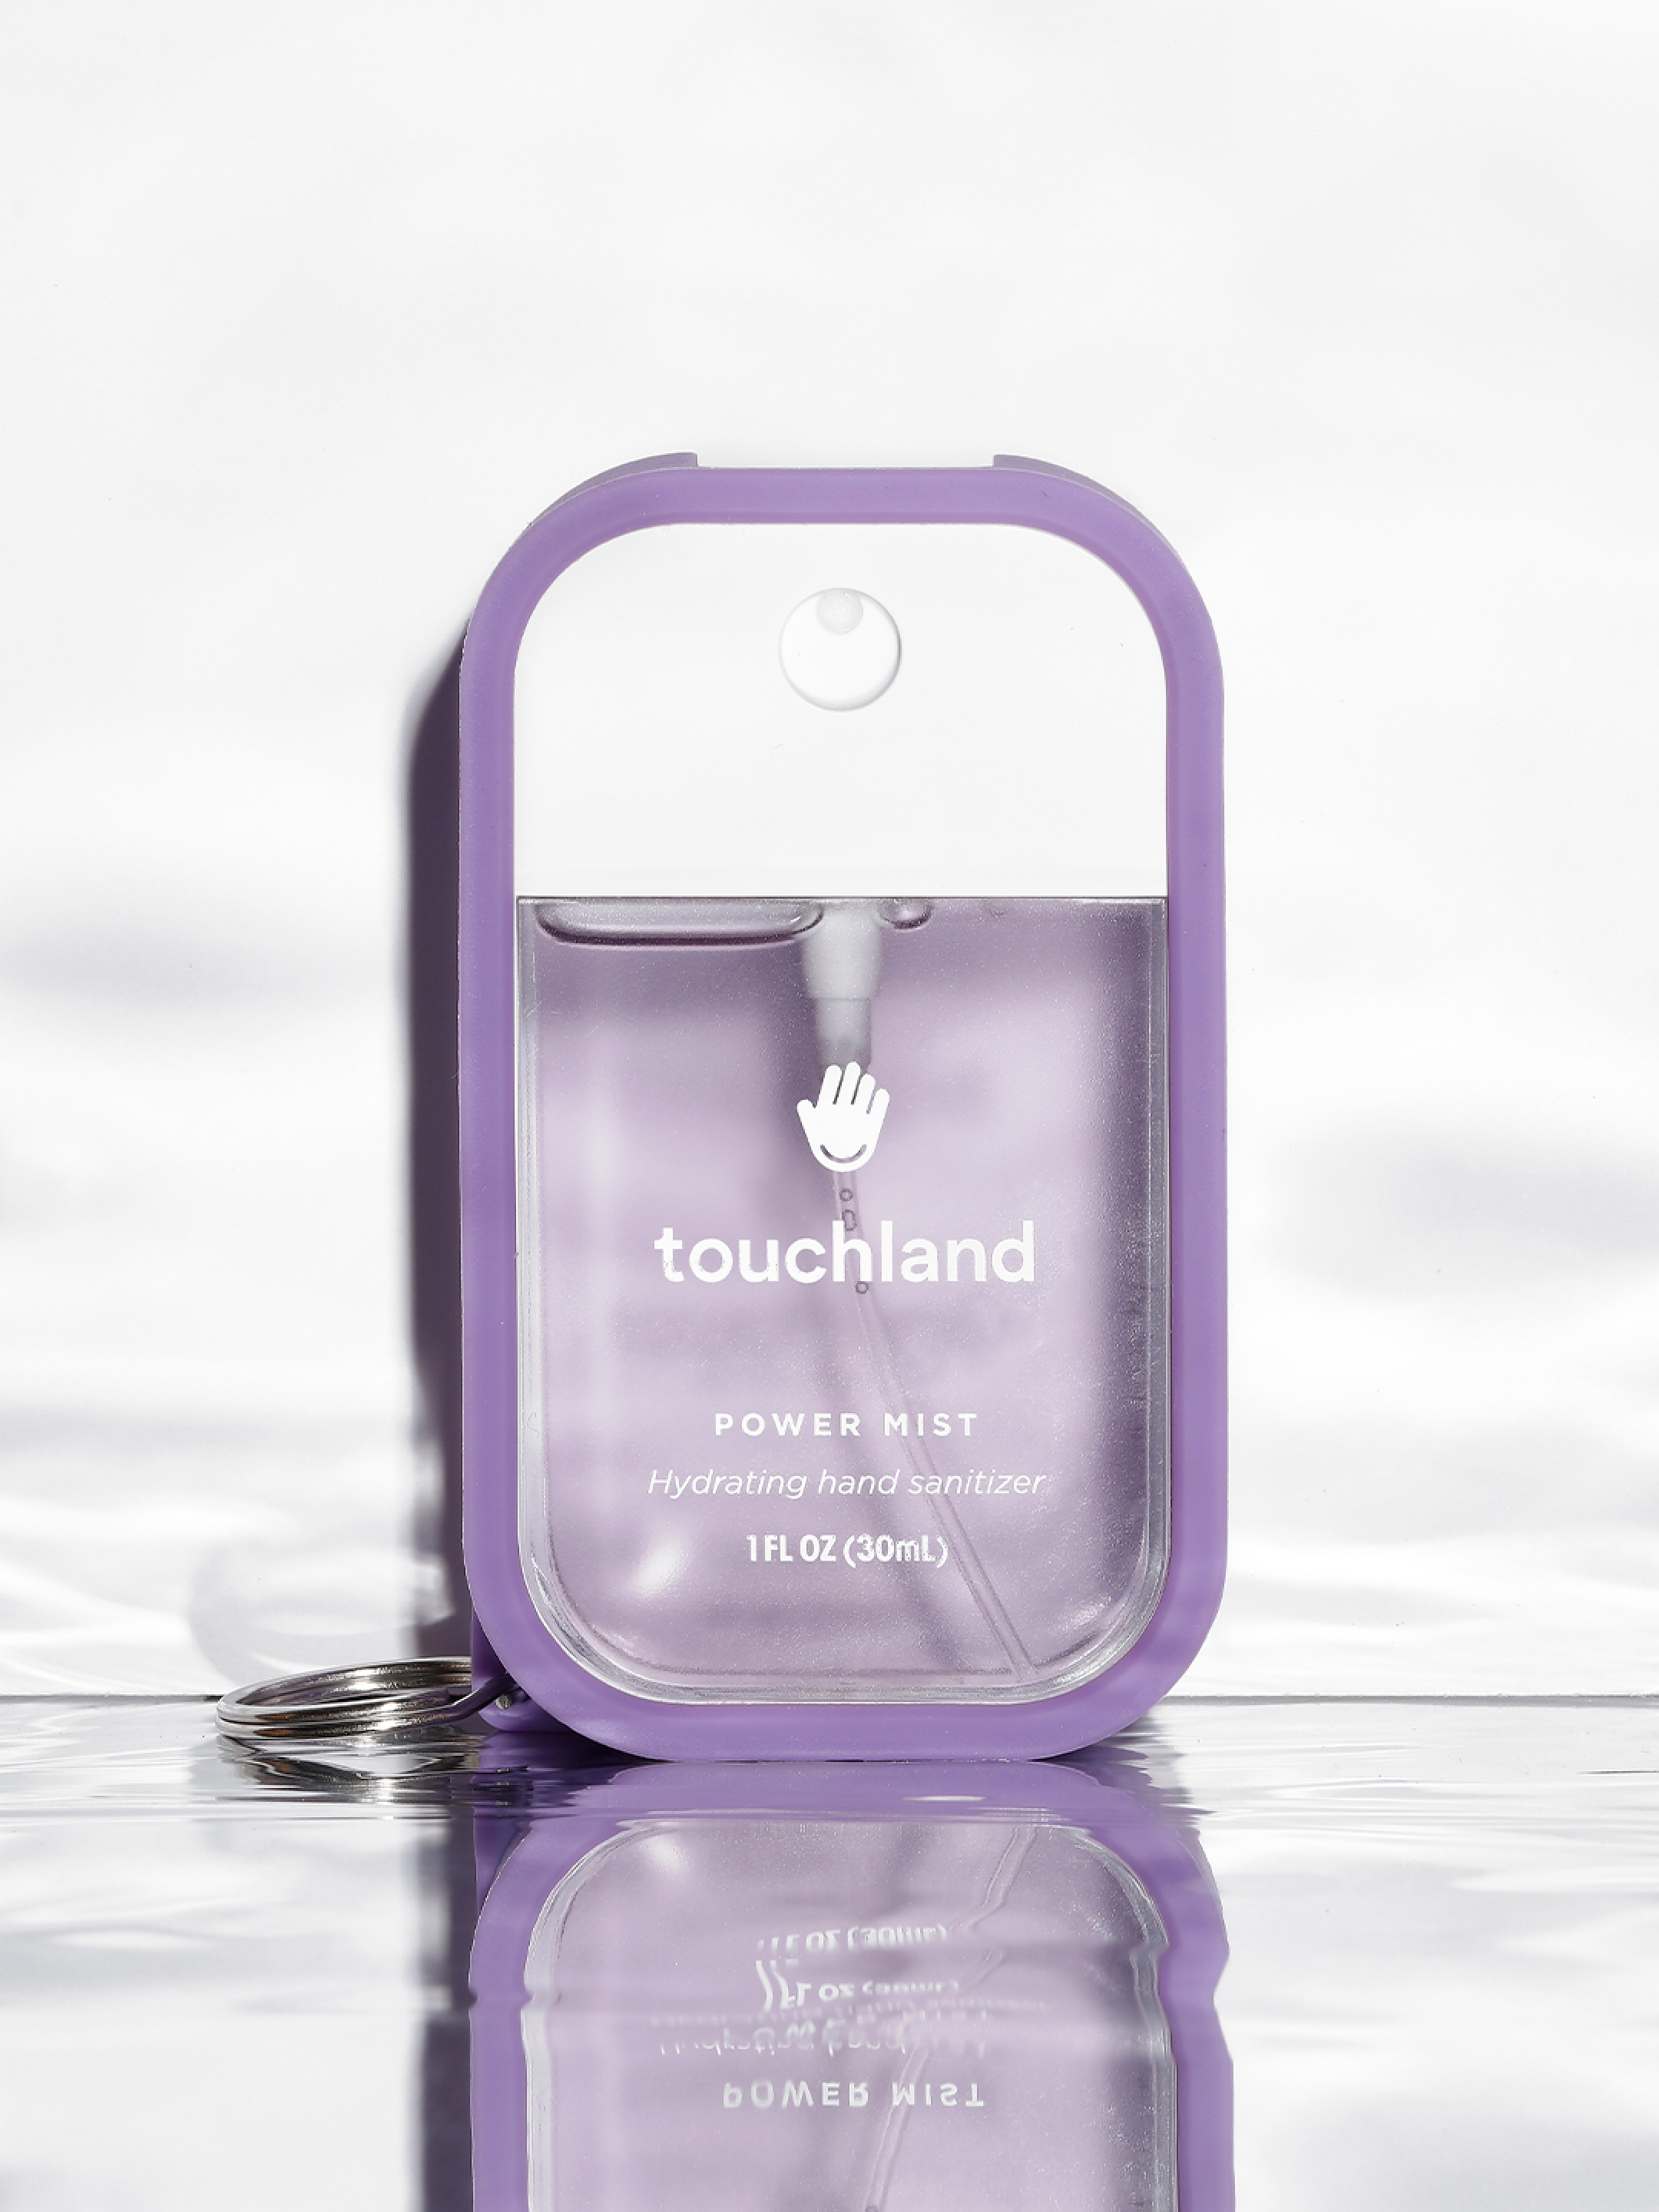 Touchland lavender power mist in purple mist case on white background